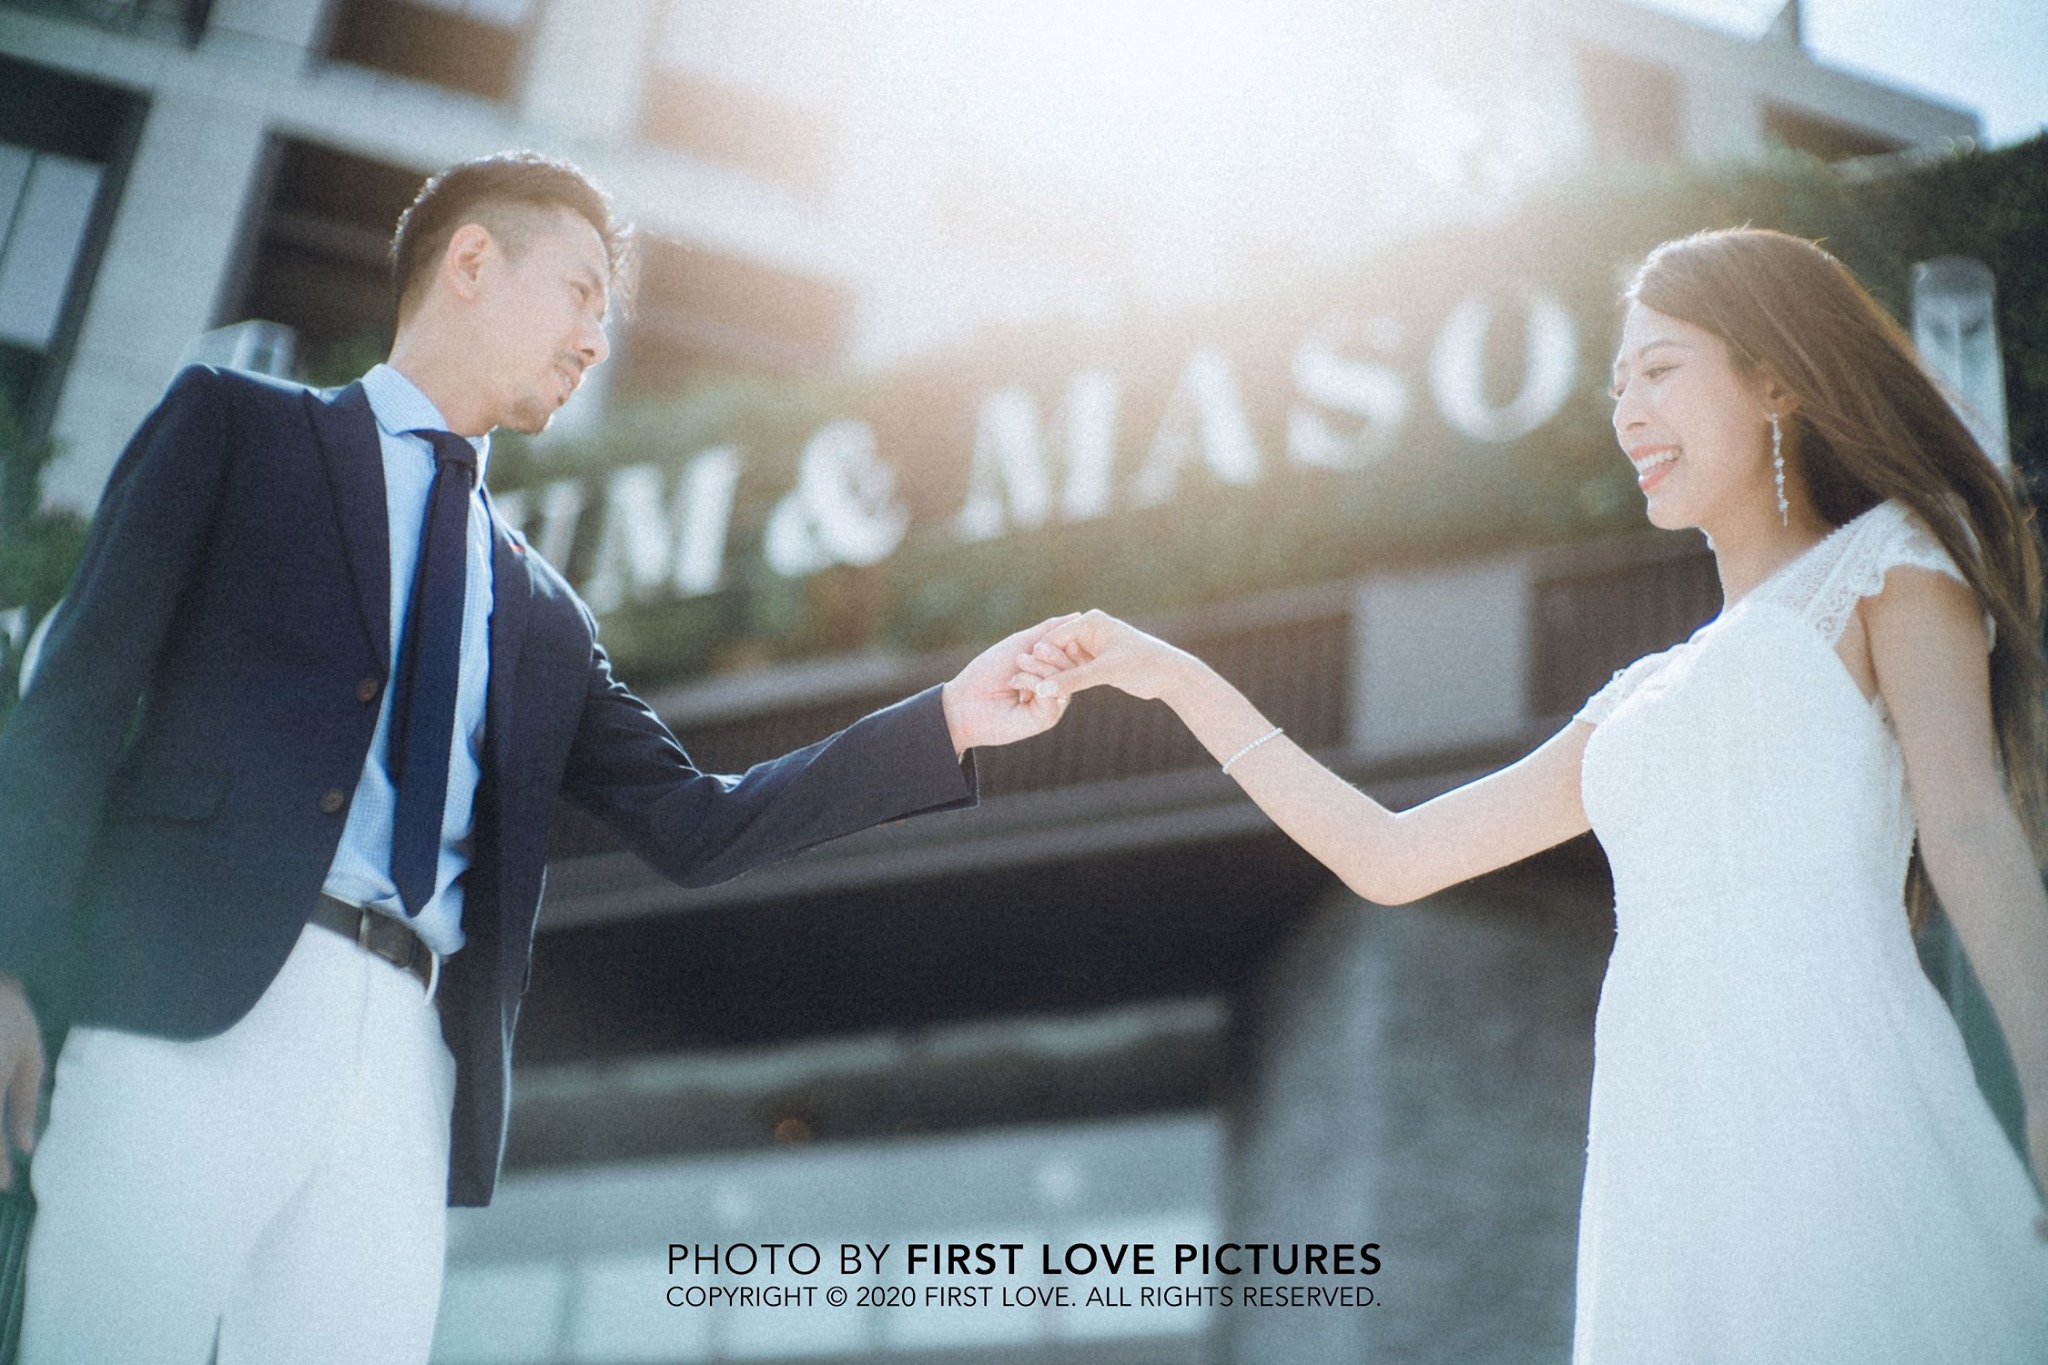 【婚紗攝影】10大婚照姿勢大集合！一秒融入拍攝氣氛  拍婚照前看這篇就夠！